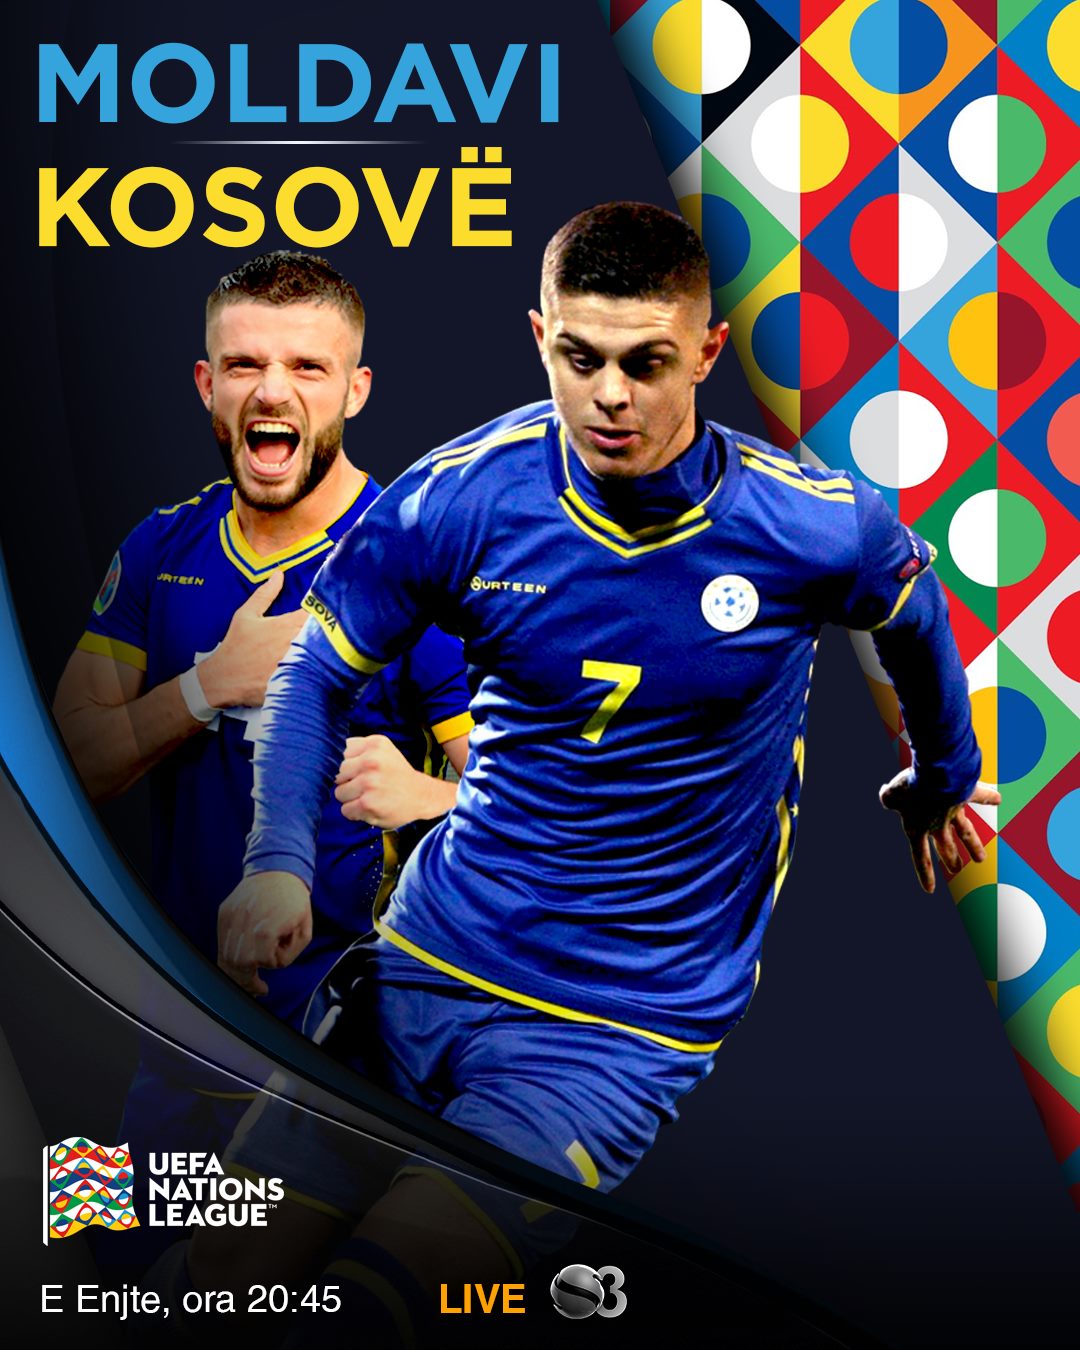 Moldavia vs Kosovo